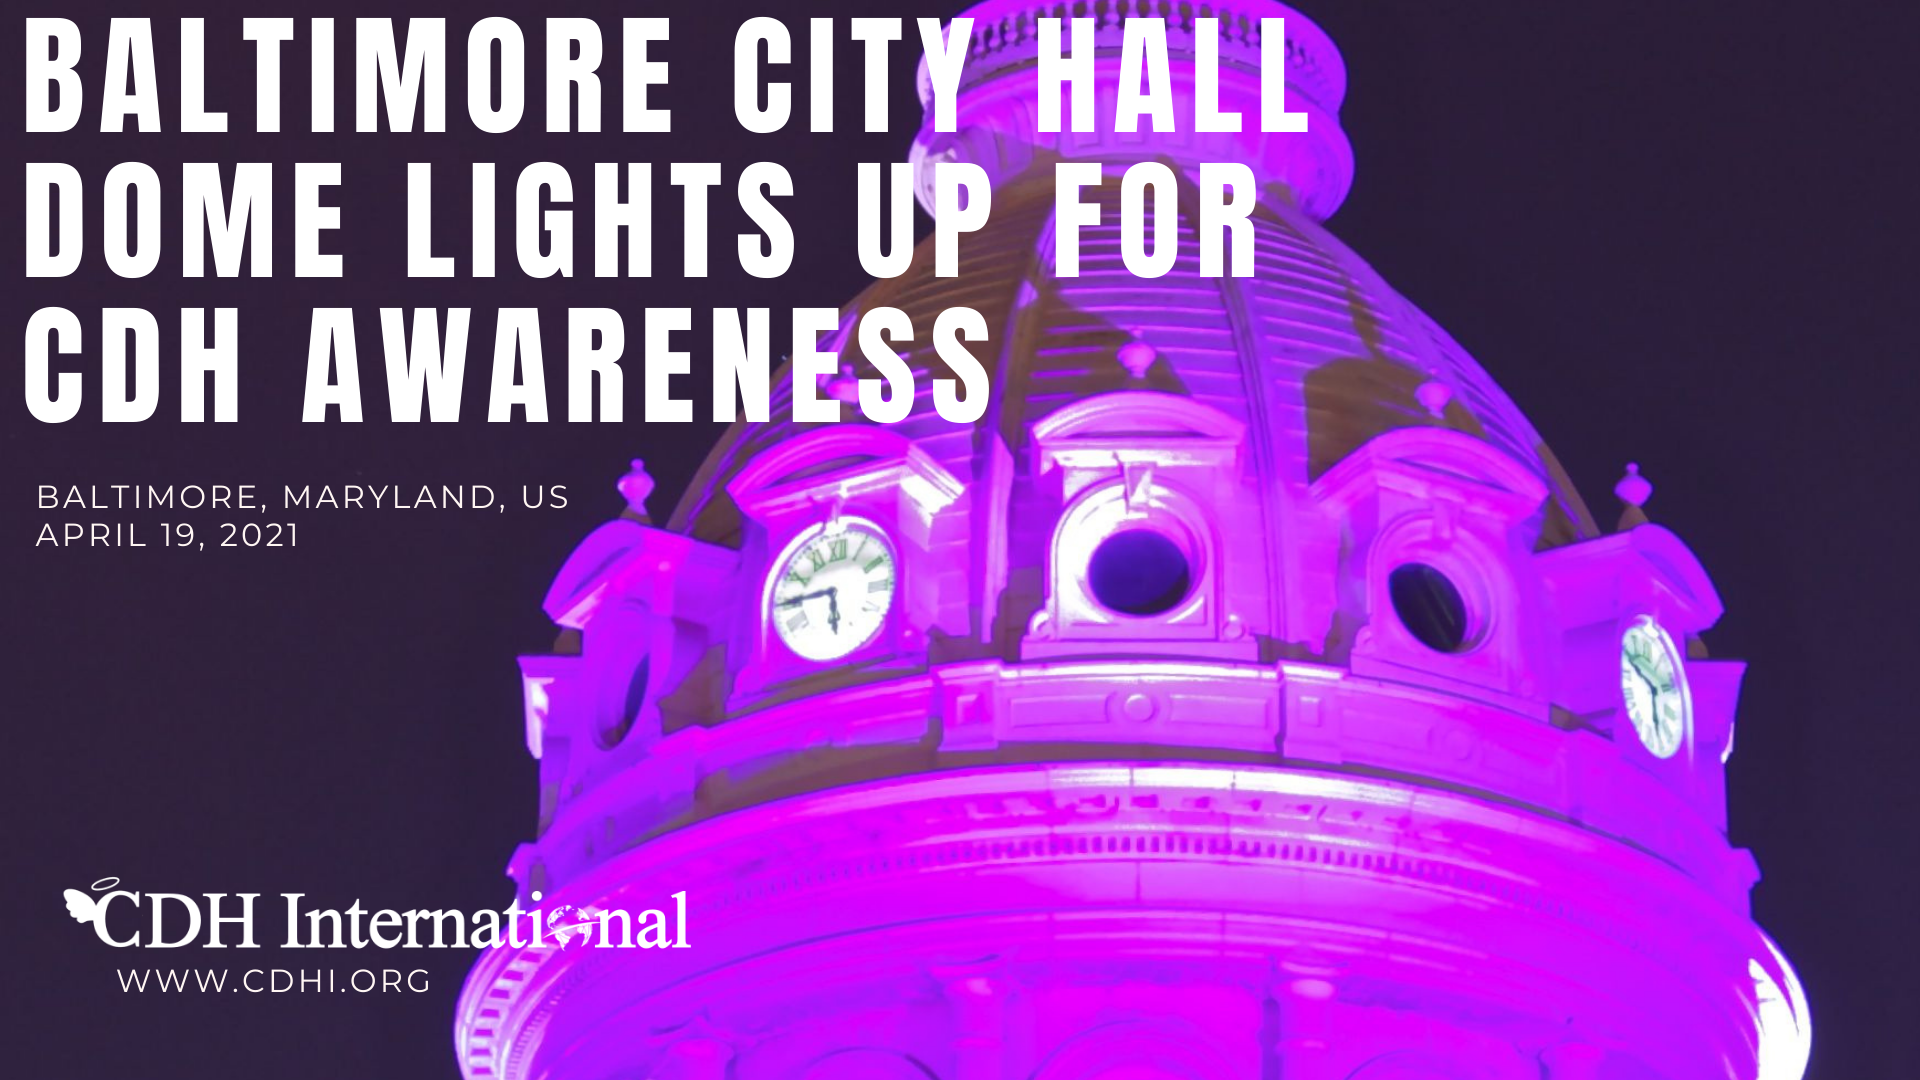 Flint Hills Discovery Center Lights Up For CDH Awareness